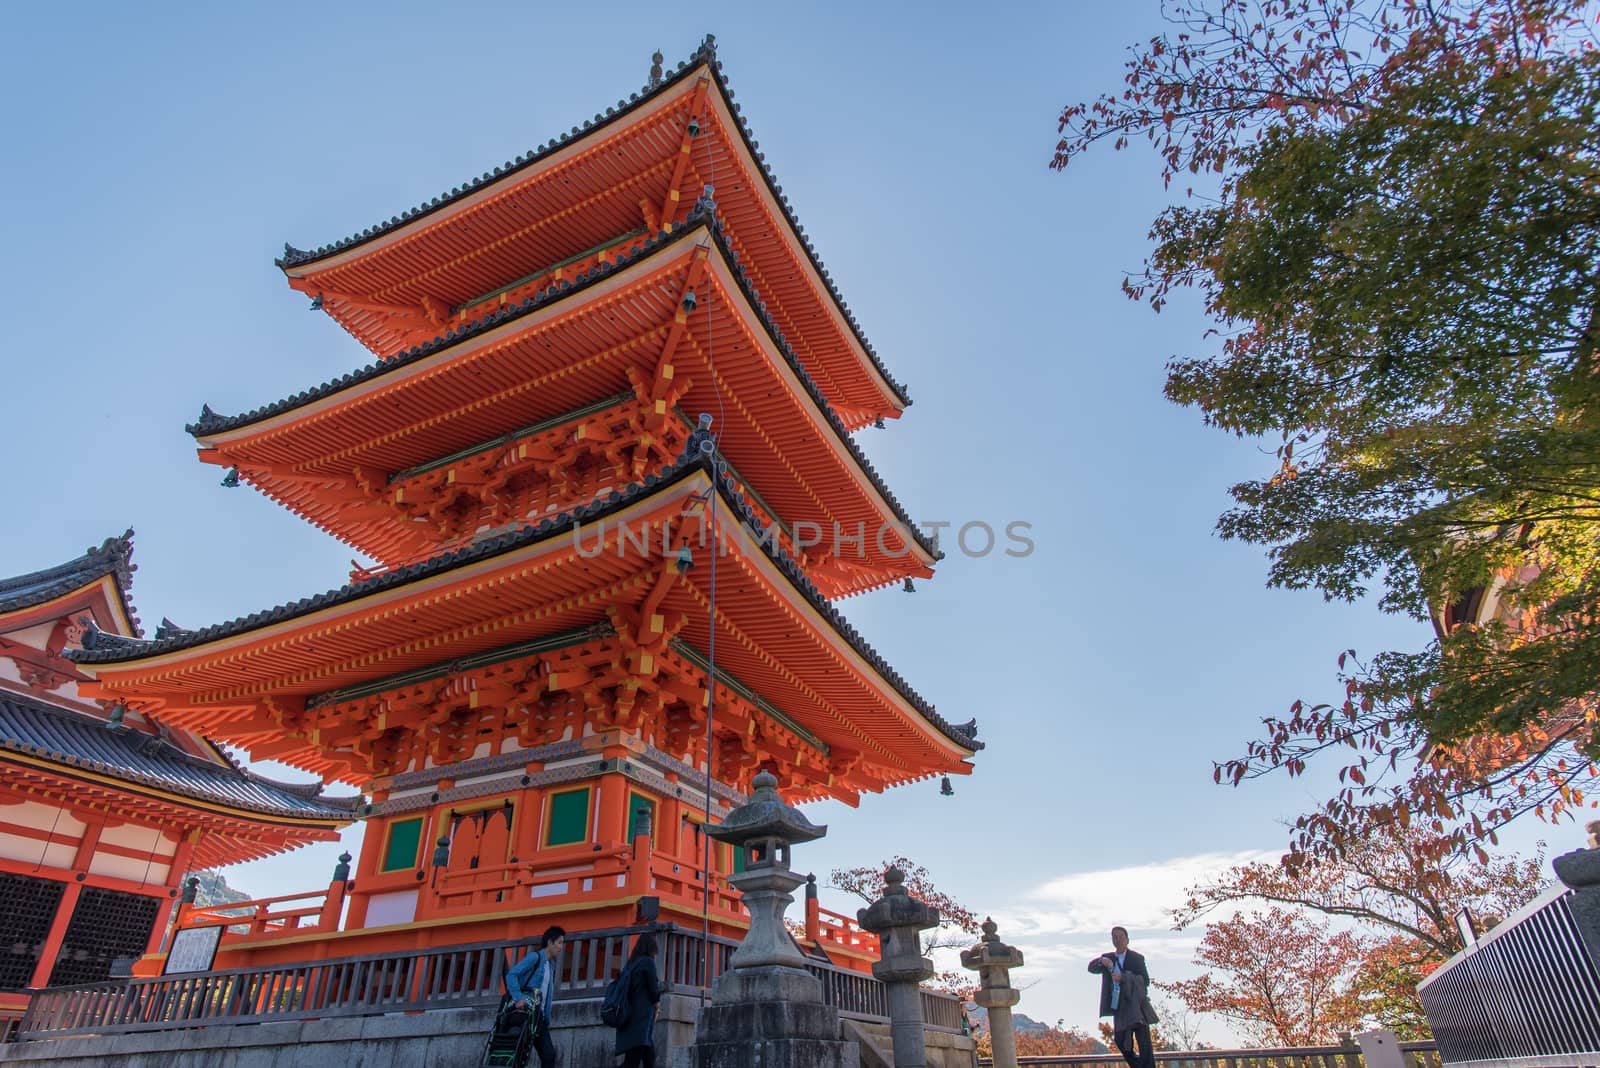 Kyoto, Japan - November 6, 2015: Taisan-ji Temple nearby Kiyomizu-dera Temple in Kyoto